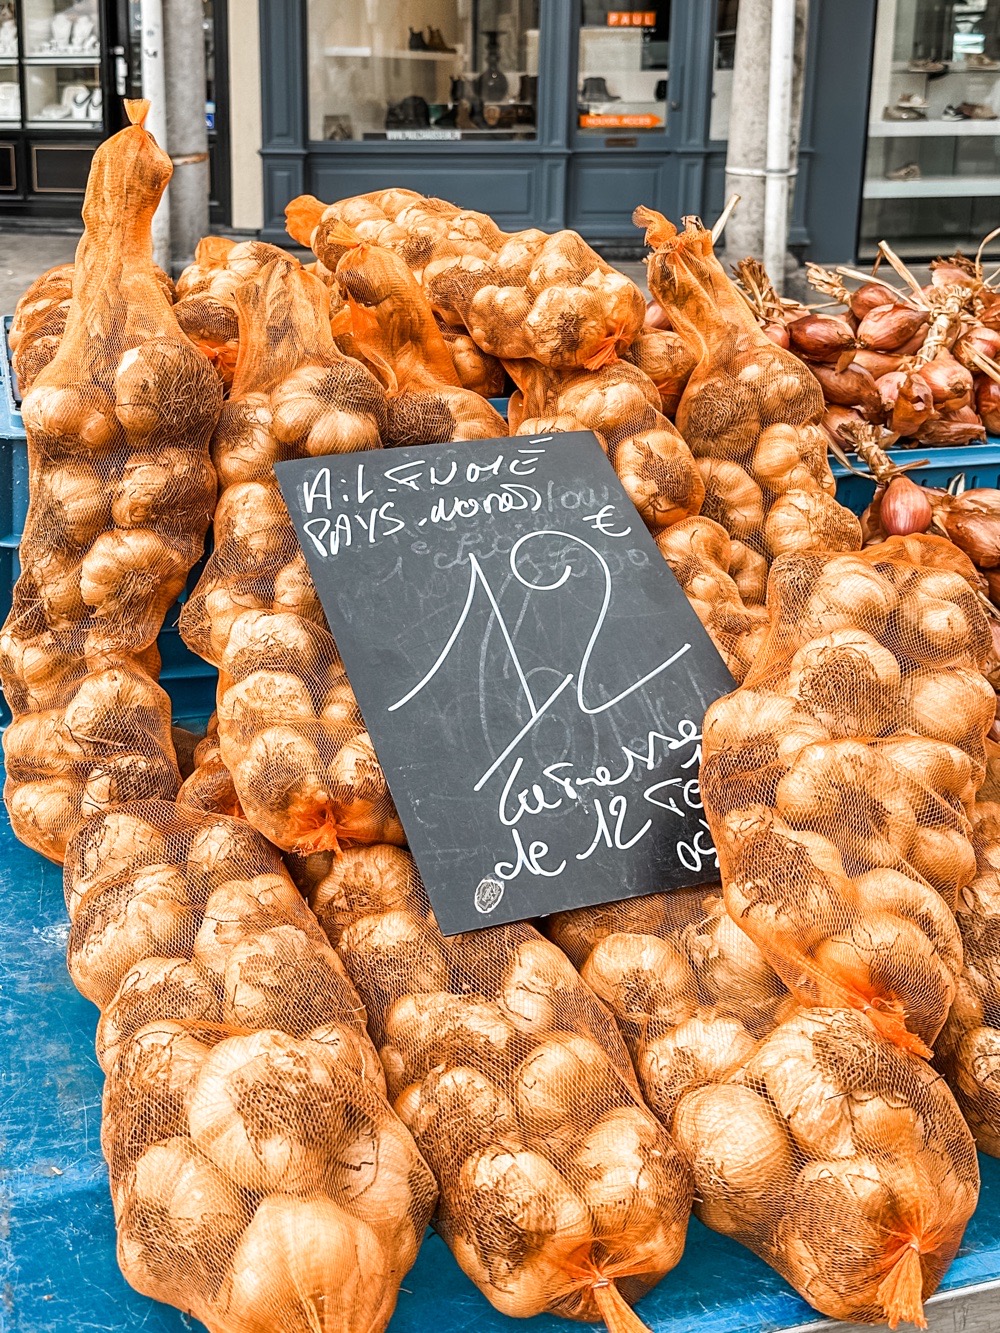 markt in Arras